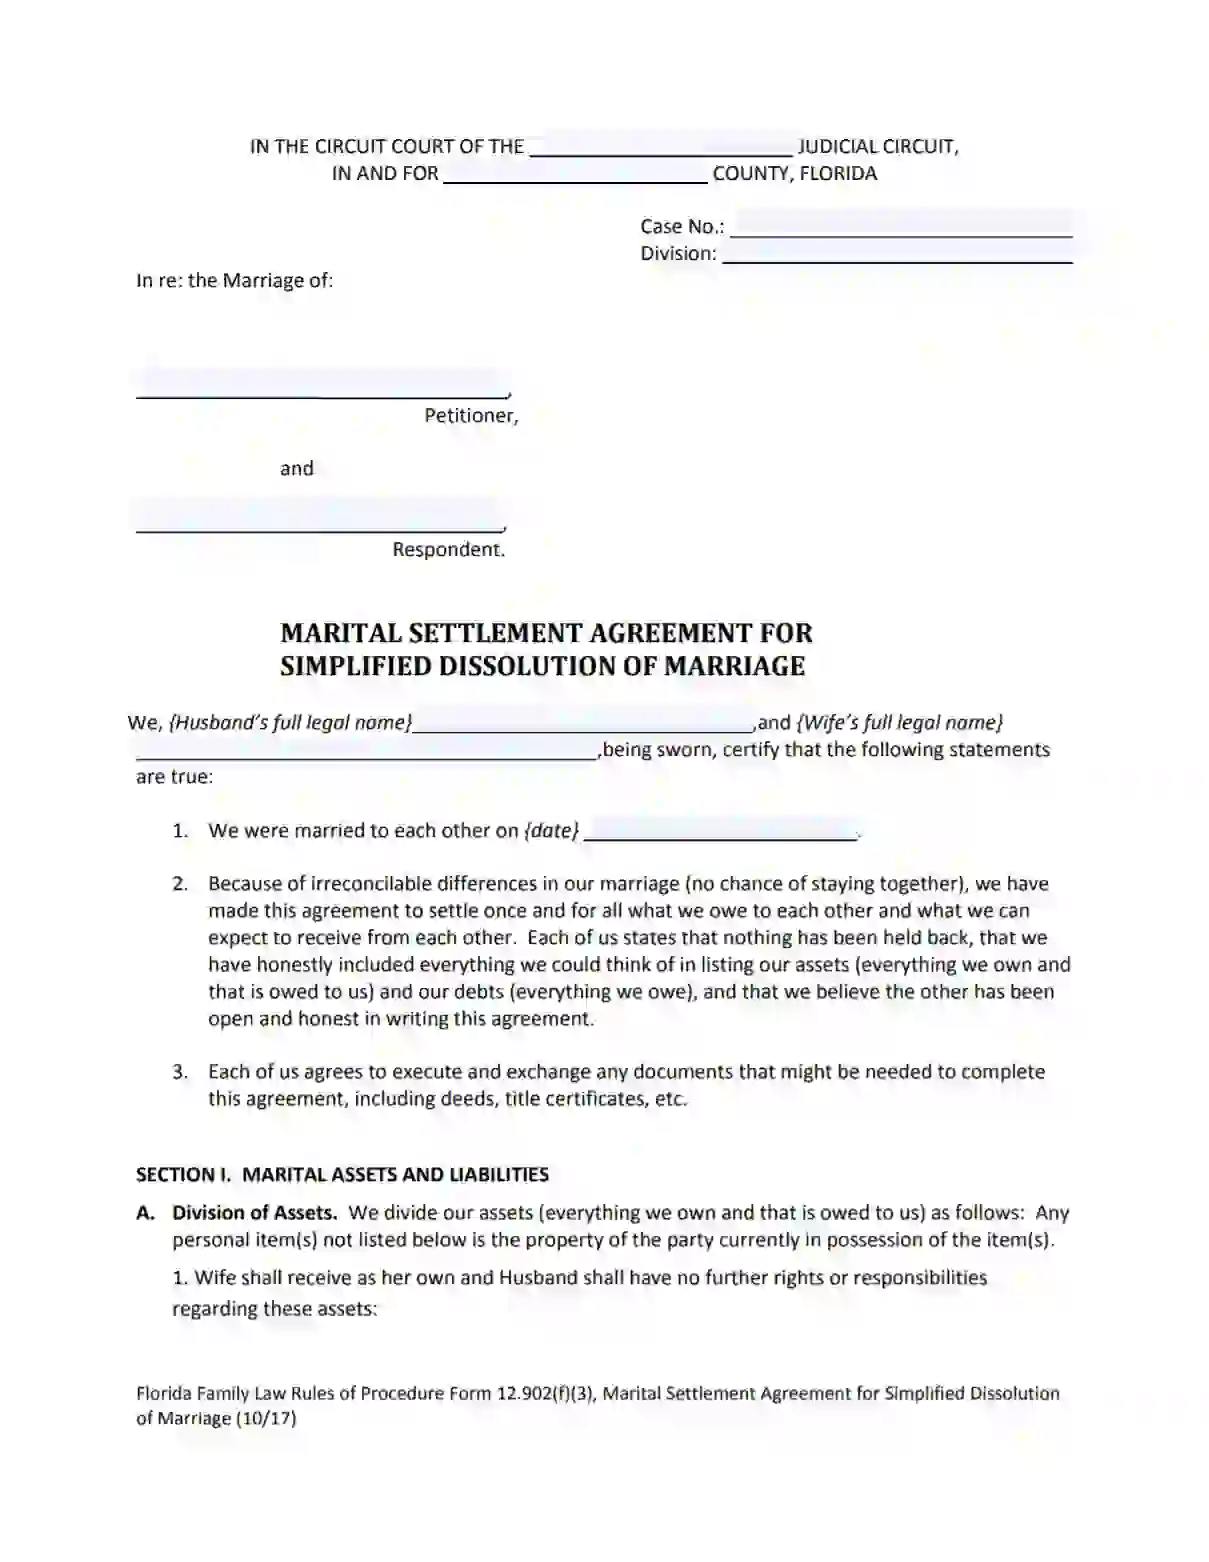 Florida Divorce (Marital) Settlement Agreement Form [PDF] Intended For divorce mediation agreement template